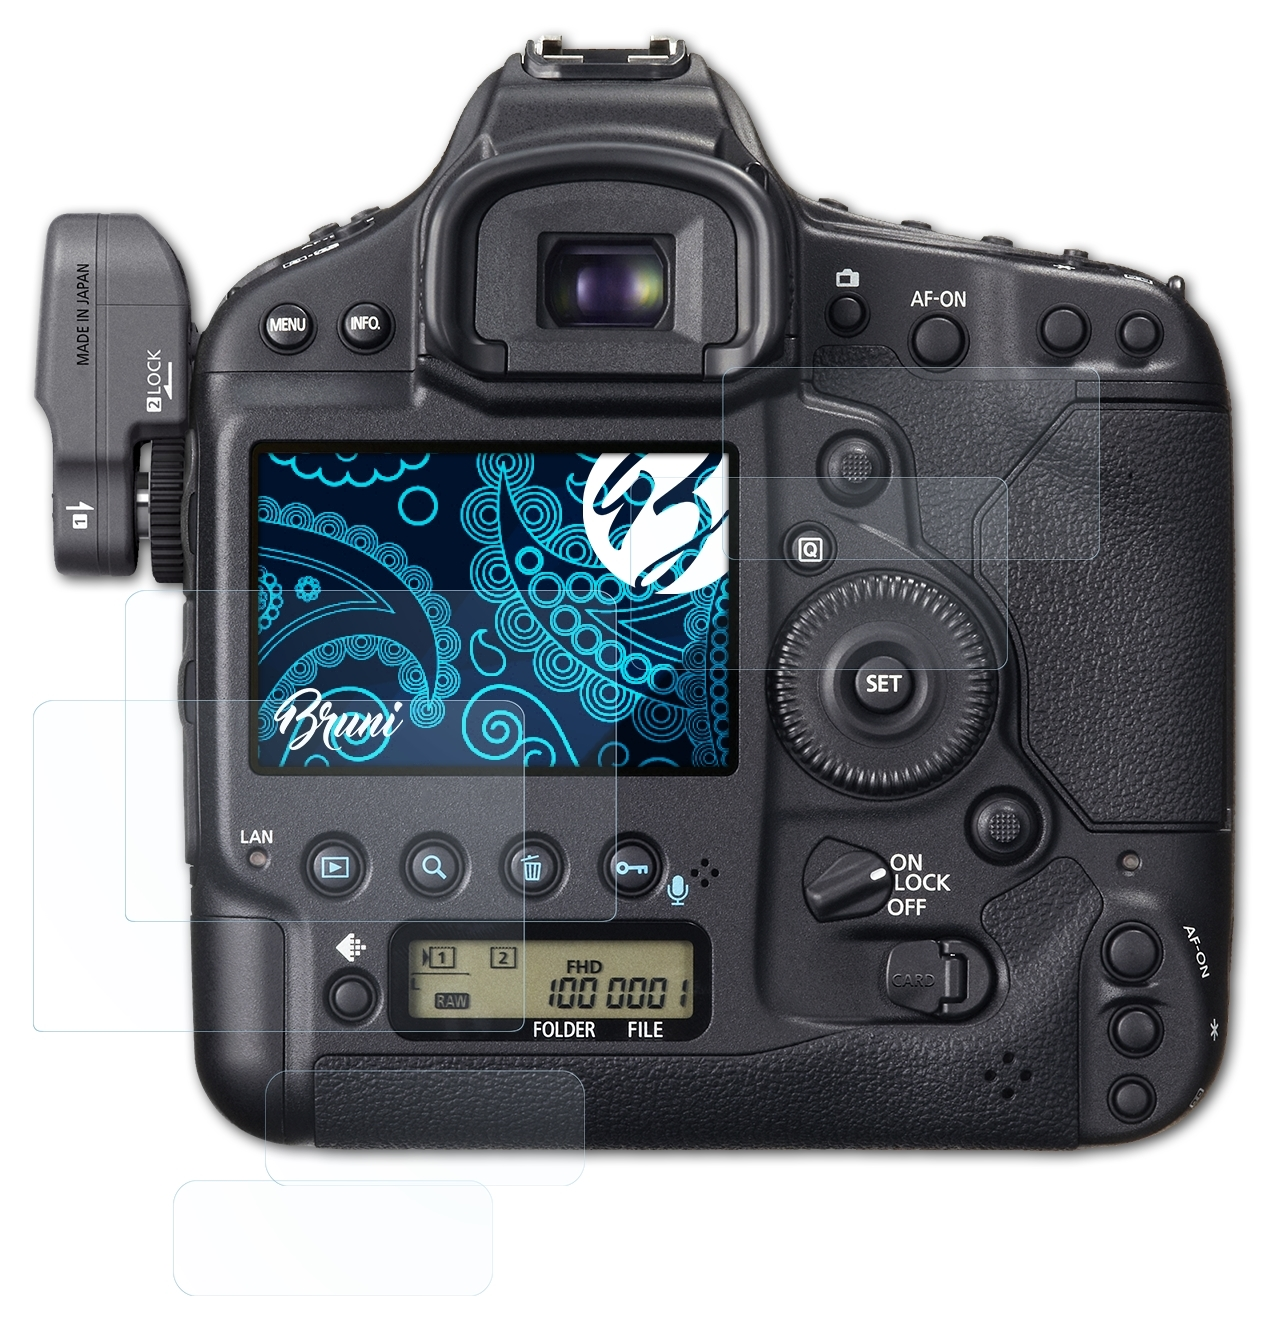 Basics-Clear BRUNI X) 1D 2x EOS Canon Schutzfolie(für